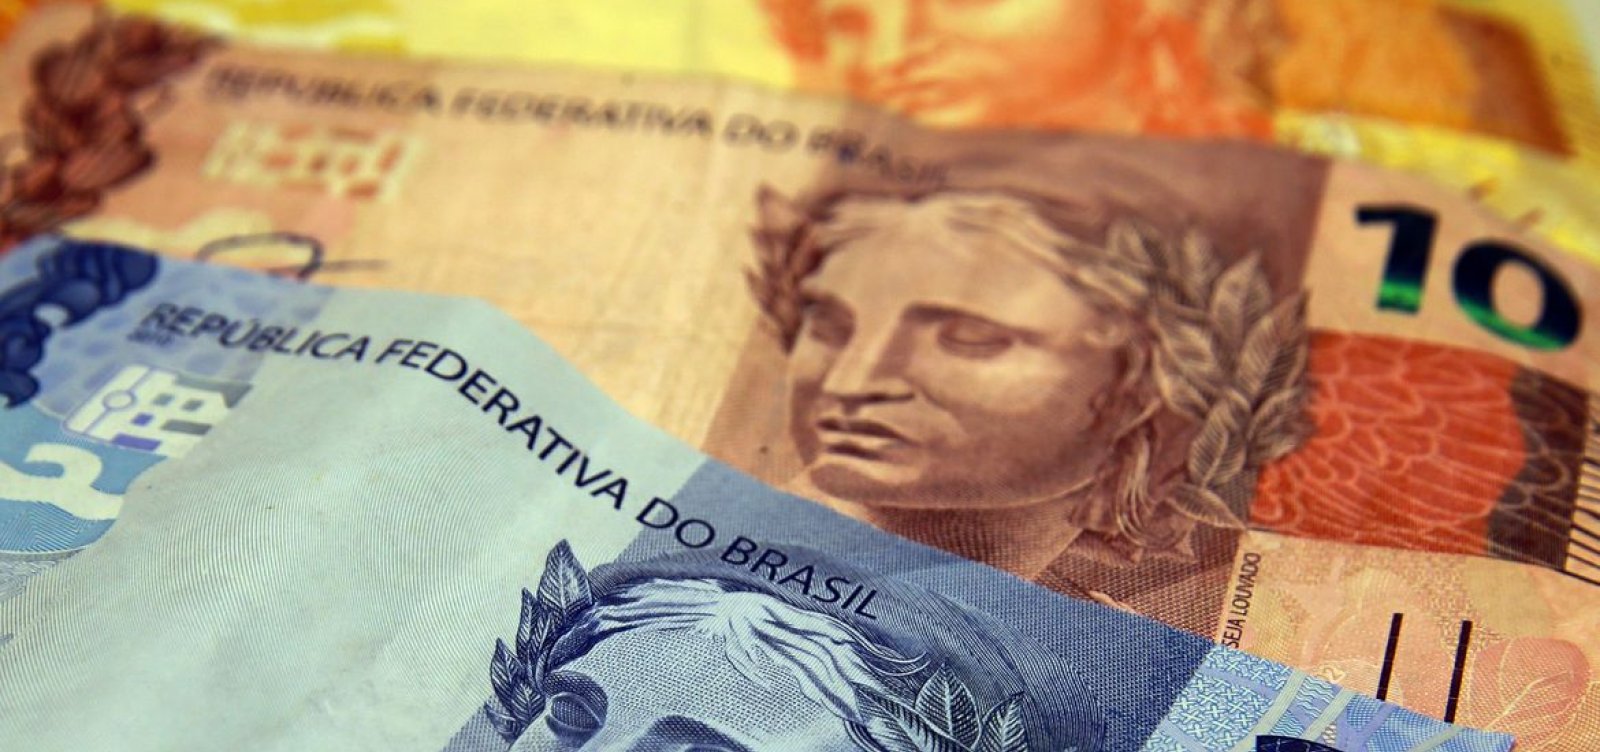 Governo Bolsonaro não deve pagar 13º salário do Bolsa Família em 2020